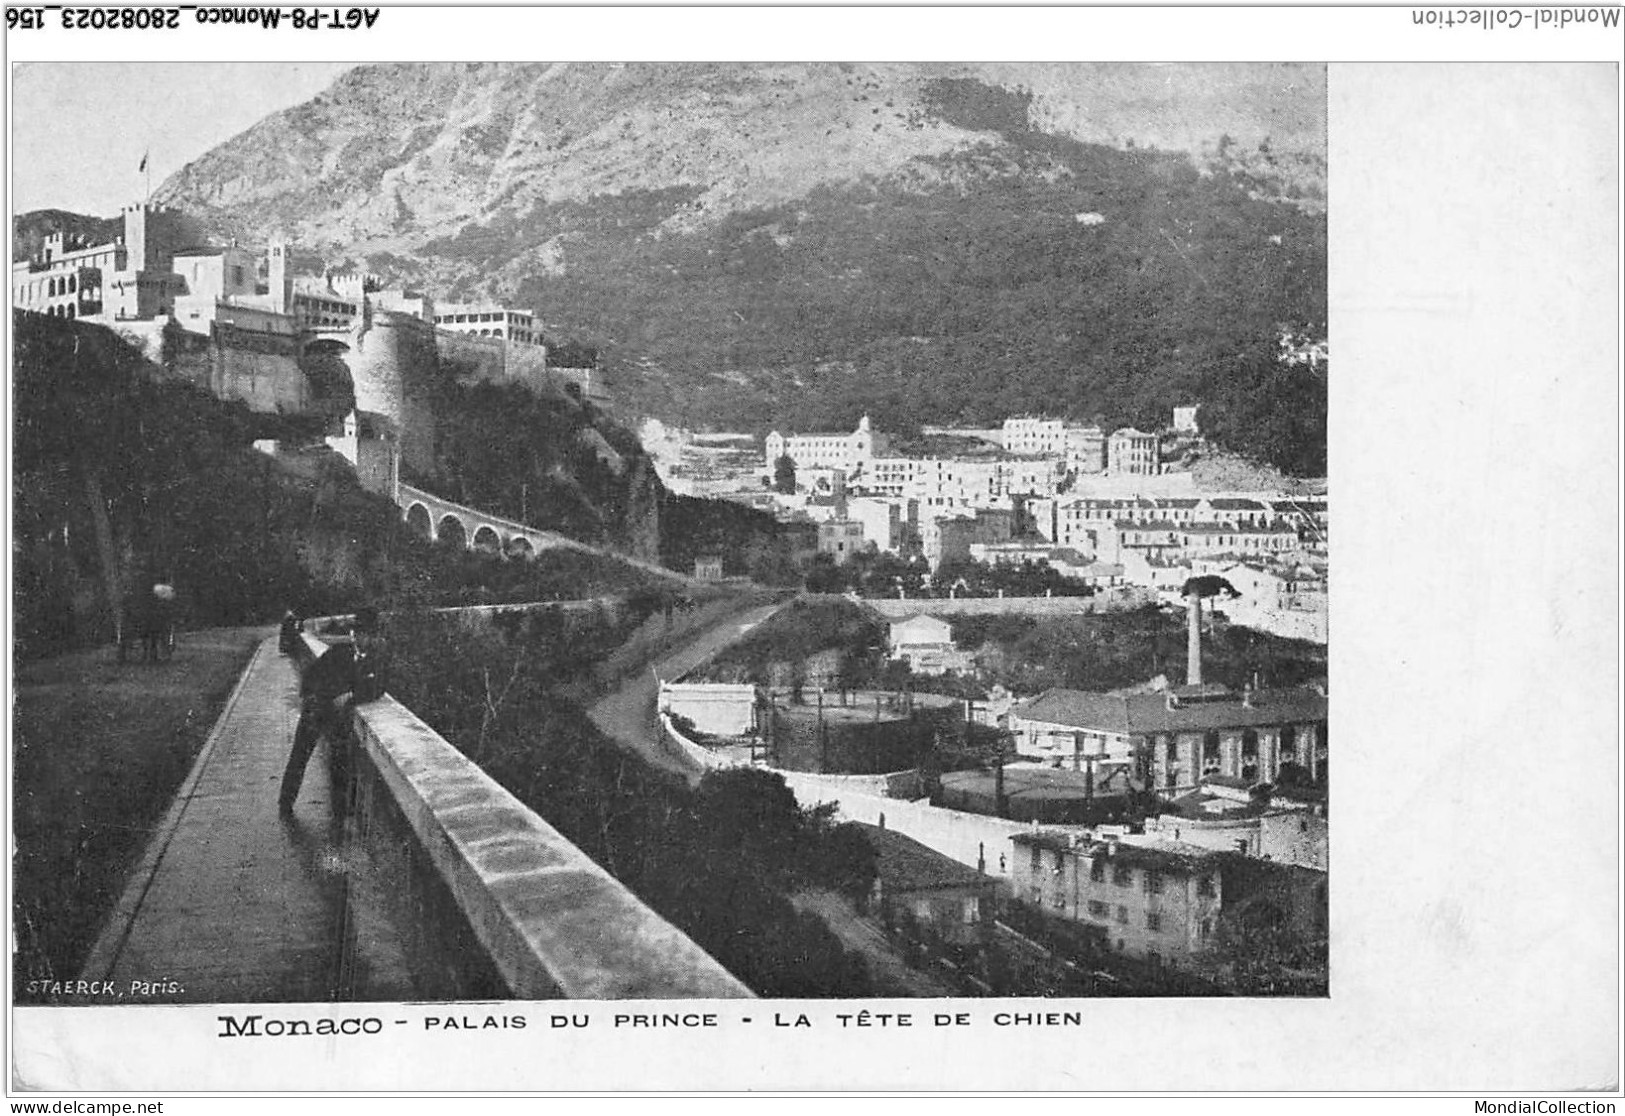 AGTP8-0623-MONACO - Palais Du Prince, La Tete De Chien - Mehransichten, Panoramakarten